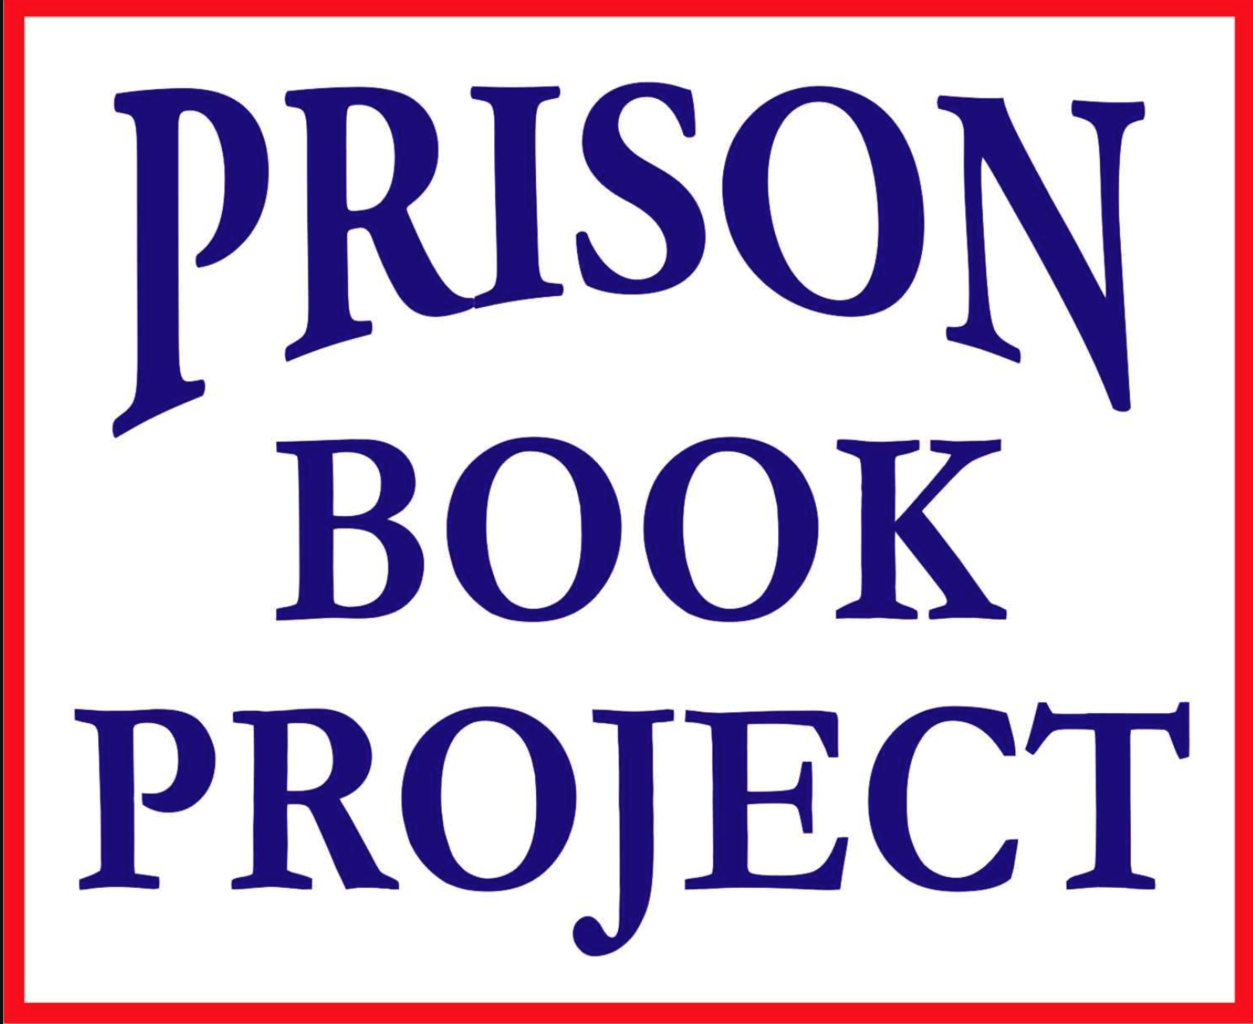 Prison Book Project